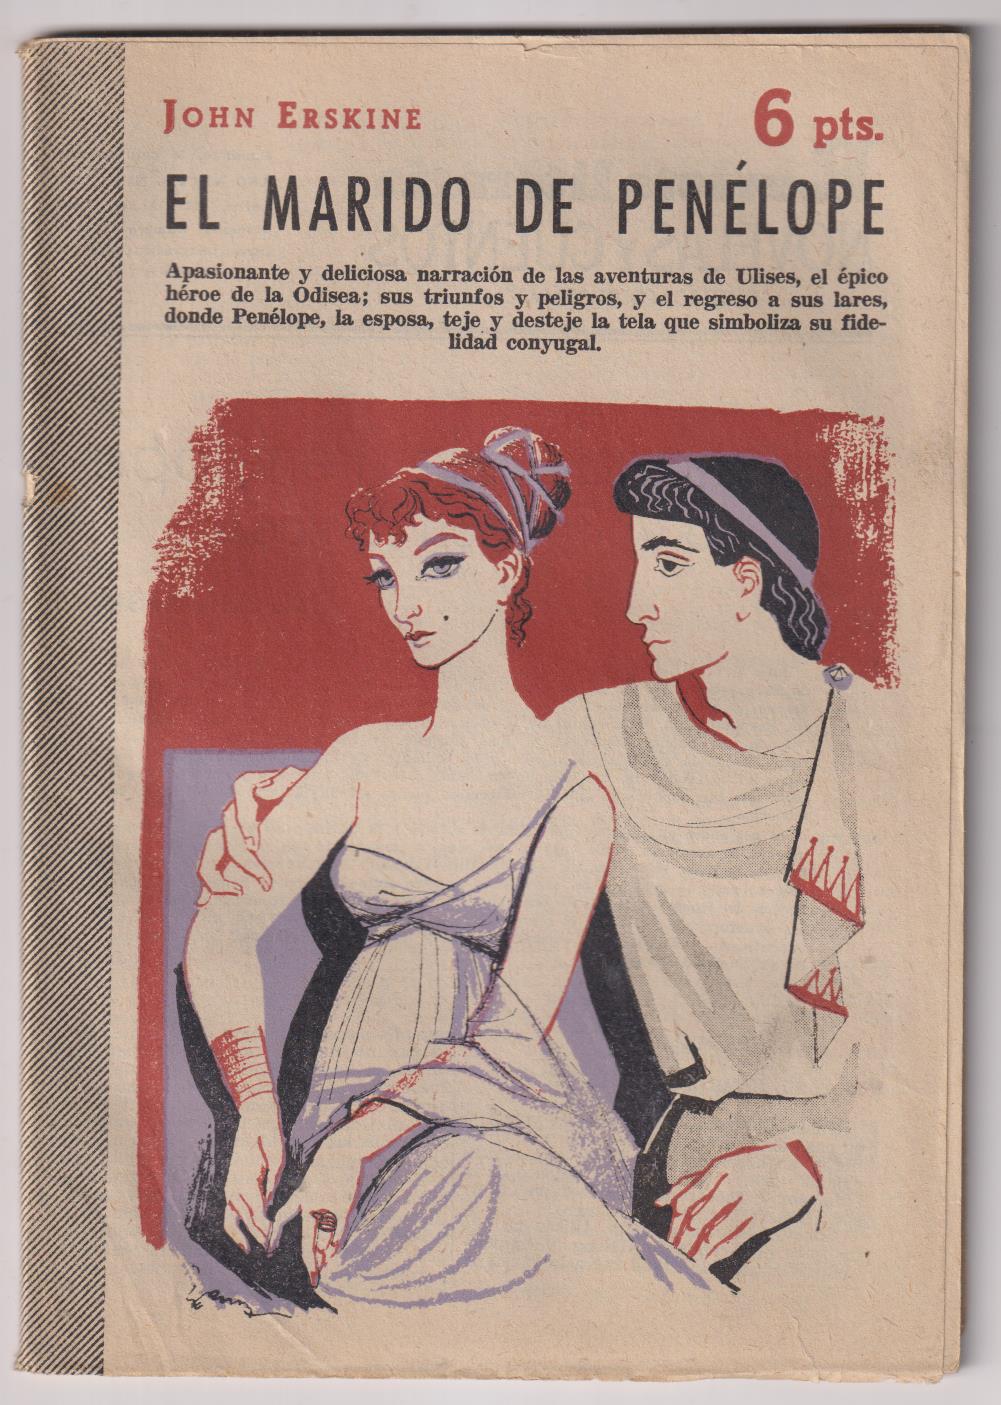 Revista Literaria Novelas y Cuentos nº 1380. El marido de Penélope por John Erskine, 1957